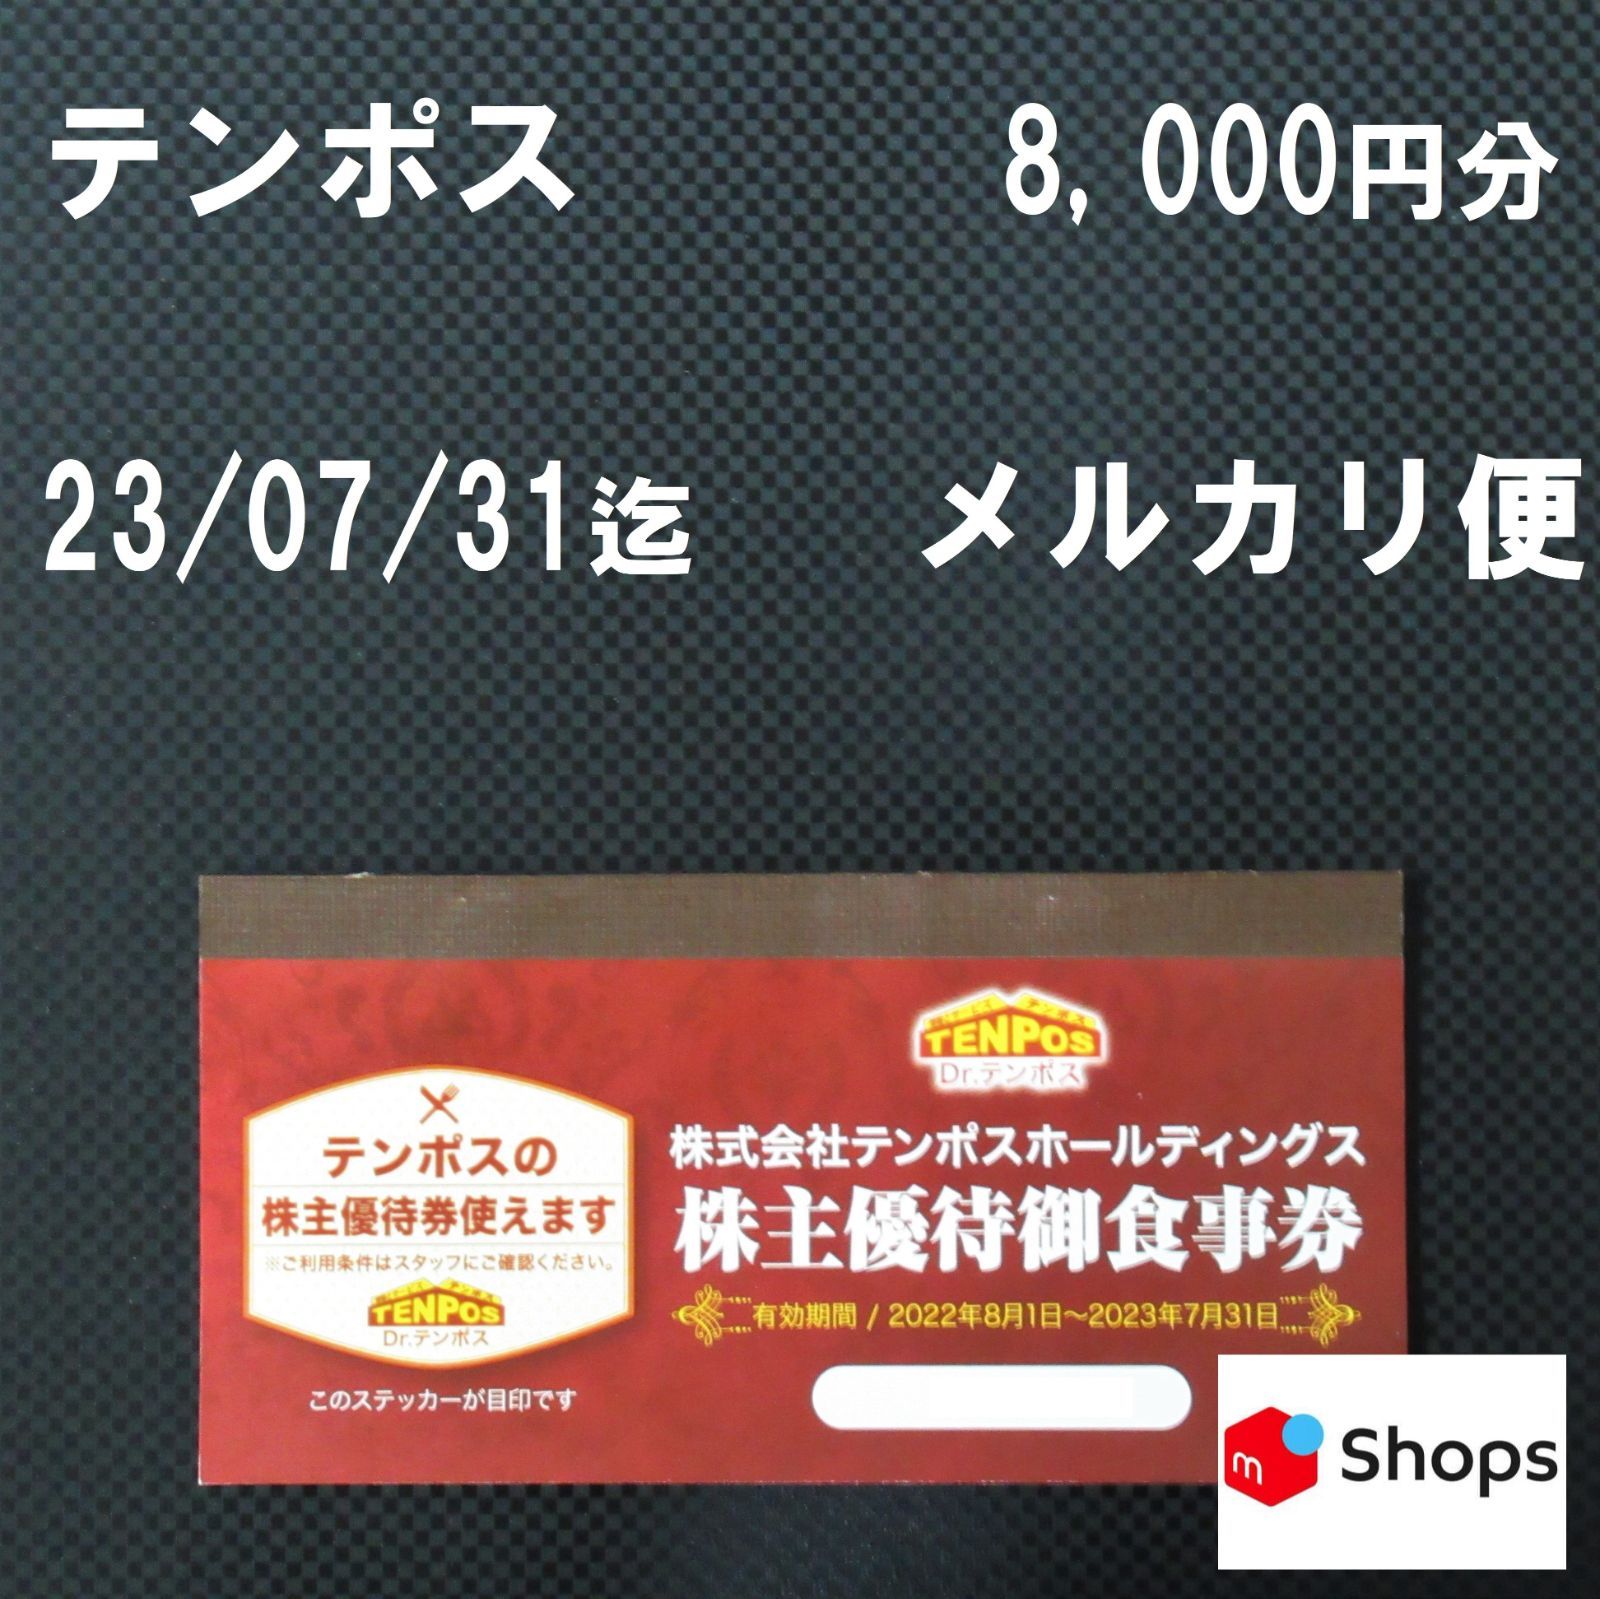 テンポス 株主優待御食事券 8,000円分 メルカリShops - Sky online ...